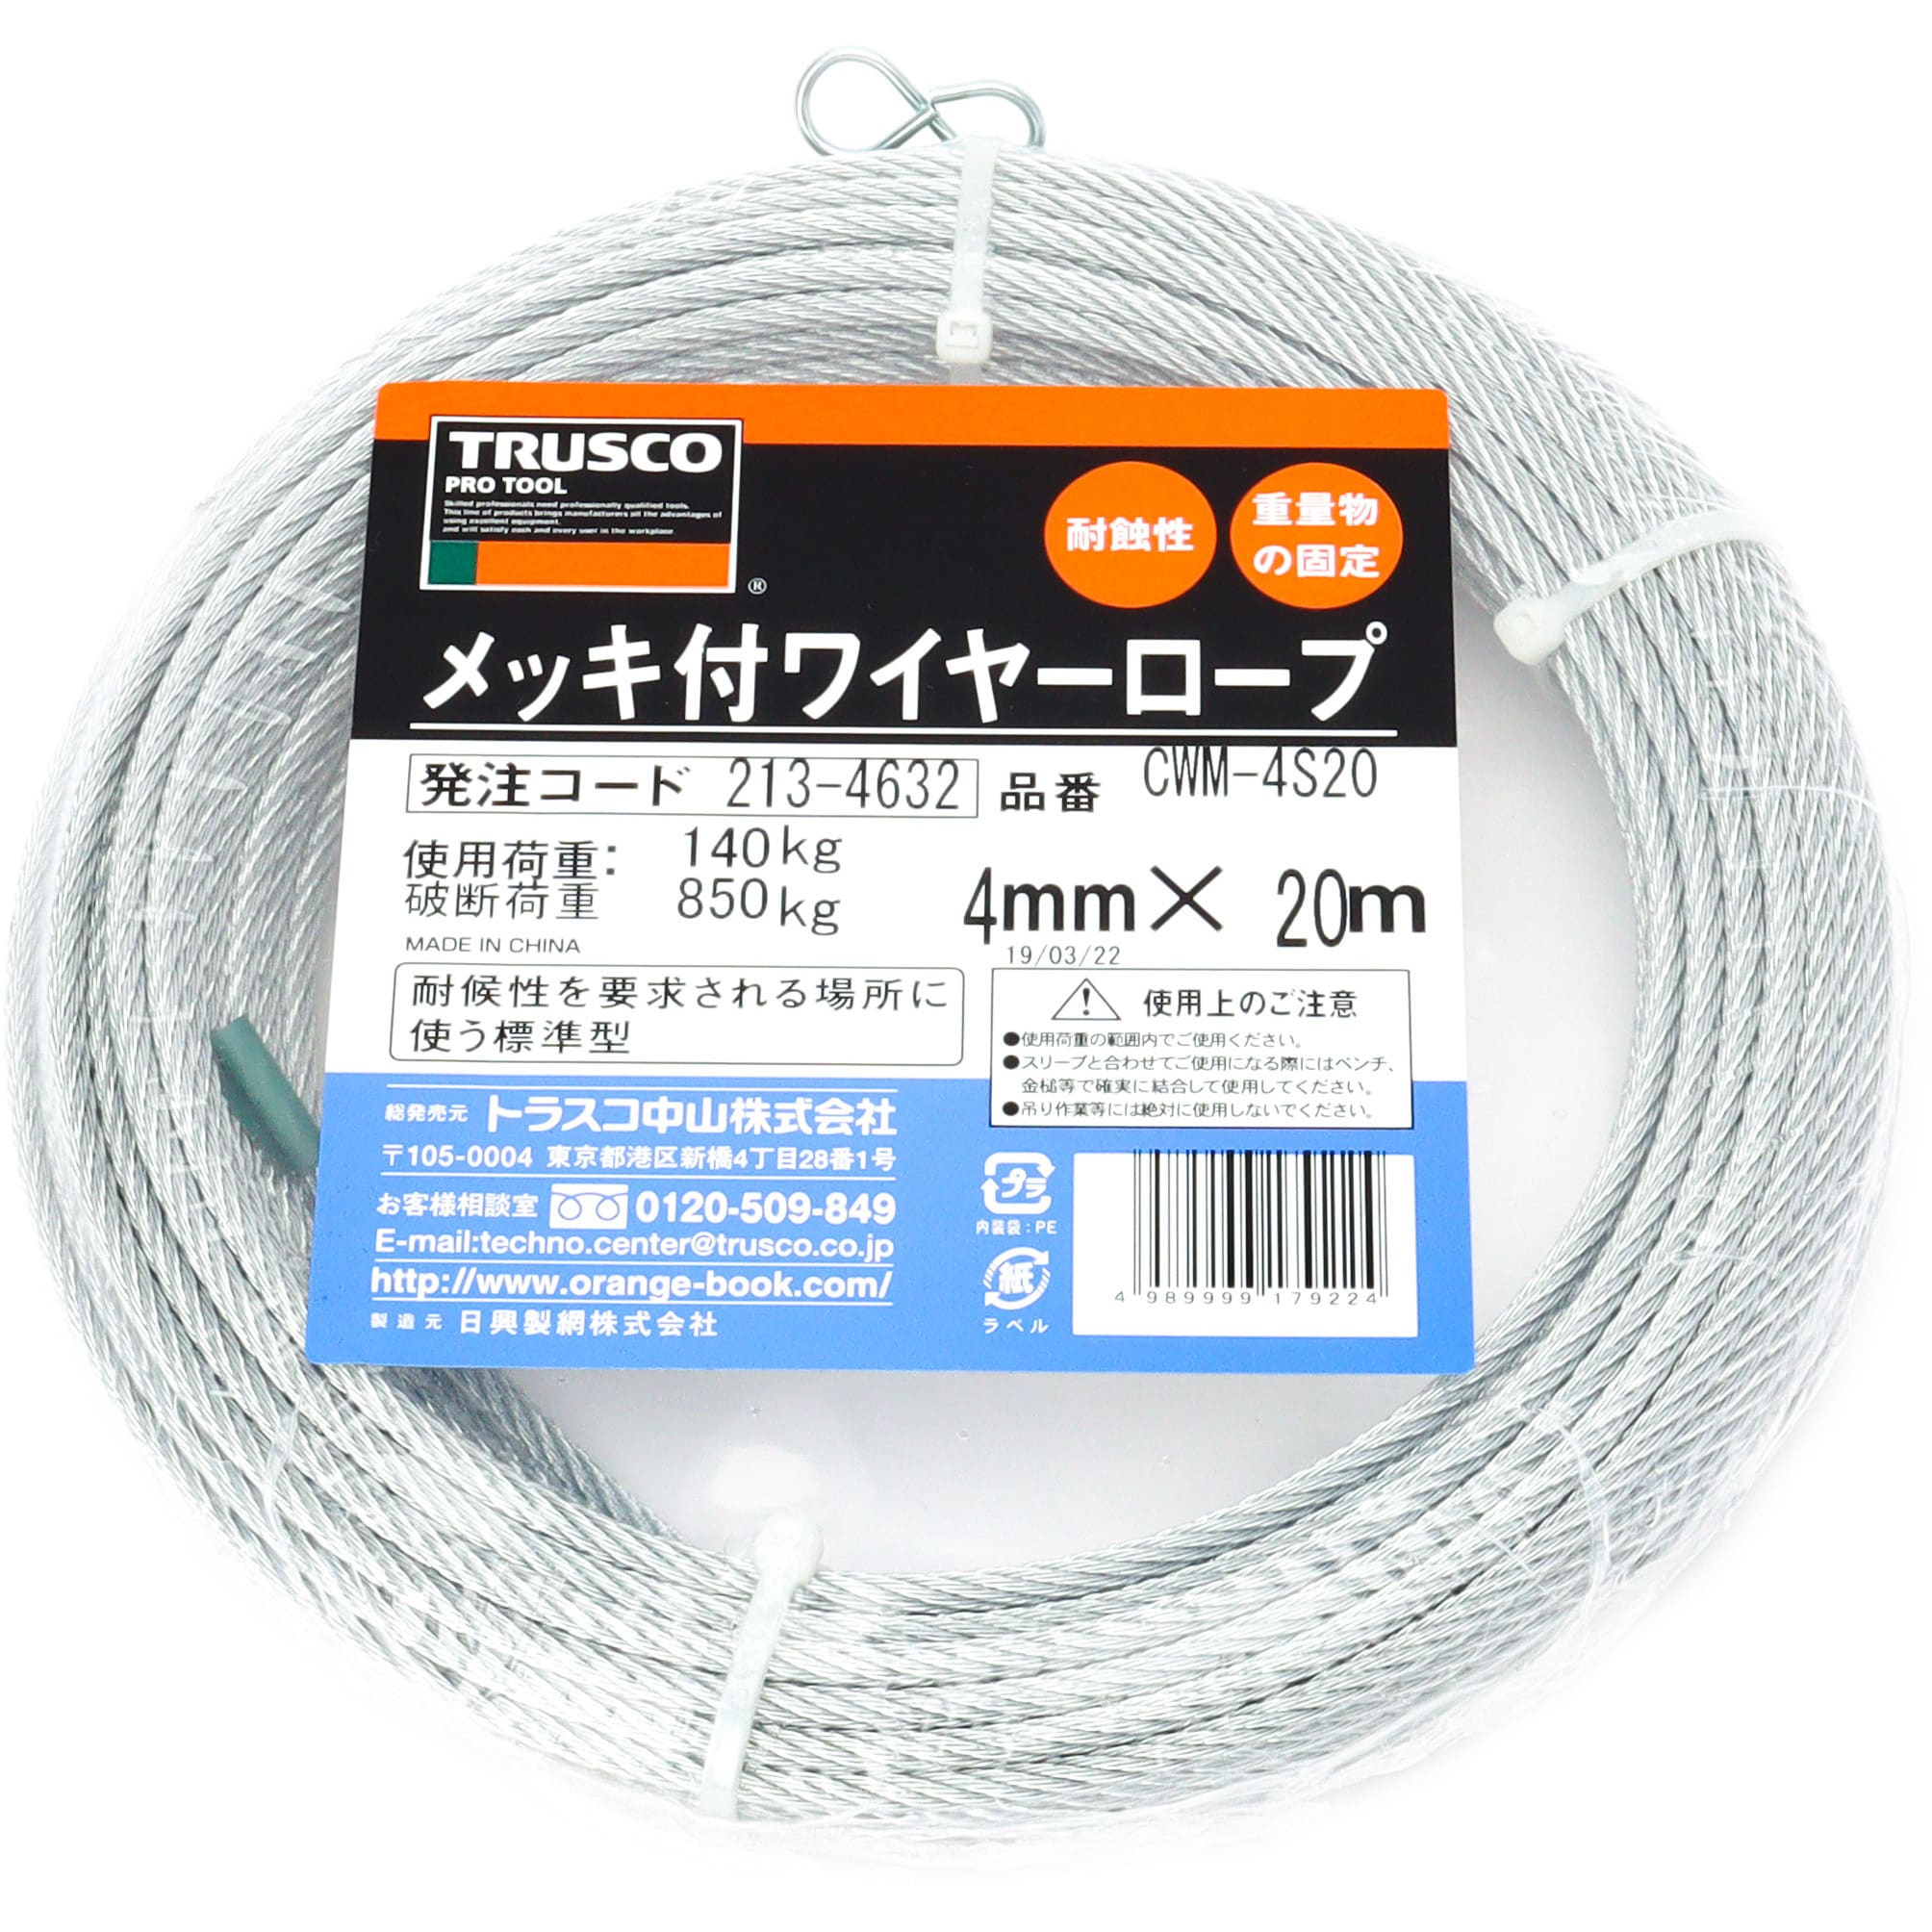 TRUSCO(トラスコ) ステンレスワイヤロープ Φ3.0mm×100m CWS-3S 最新・限定 DIY、工具